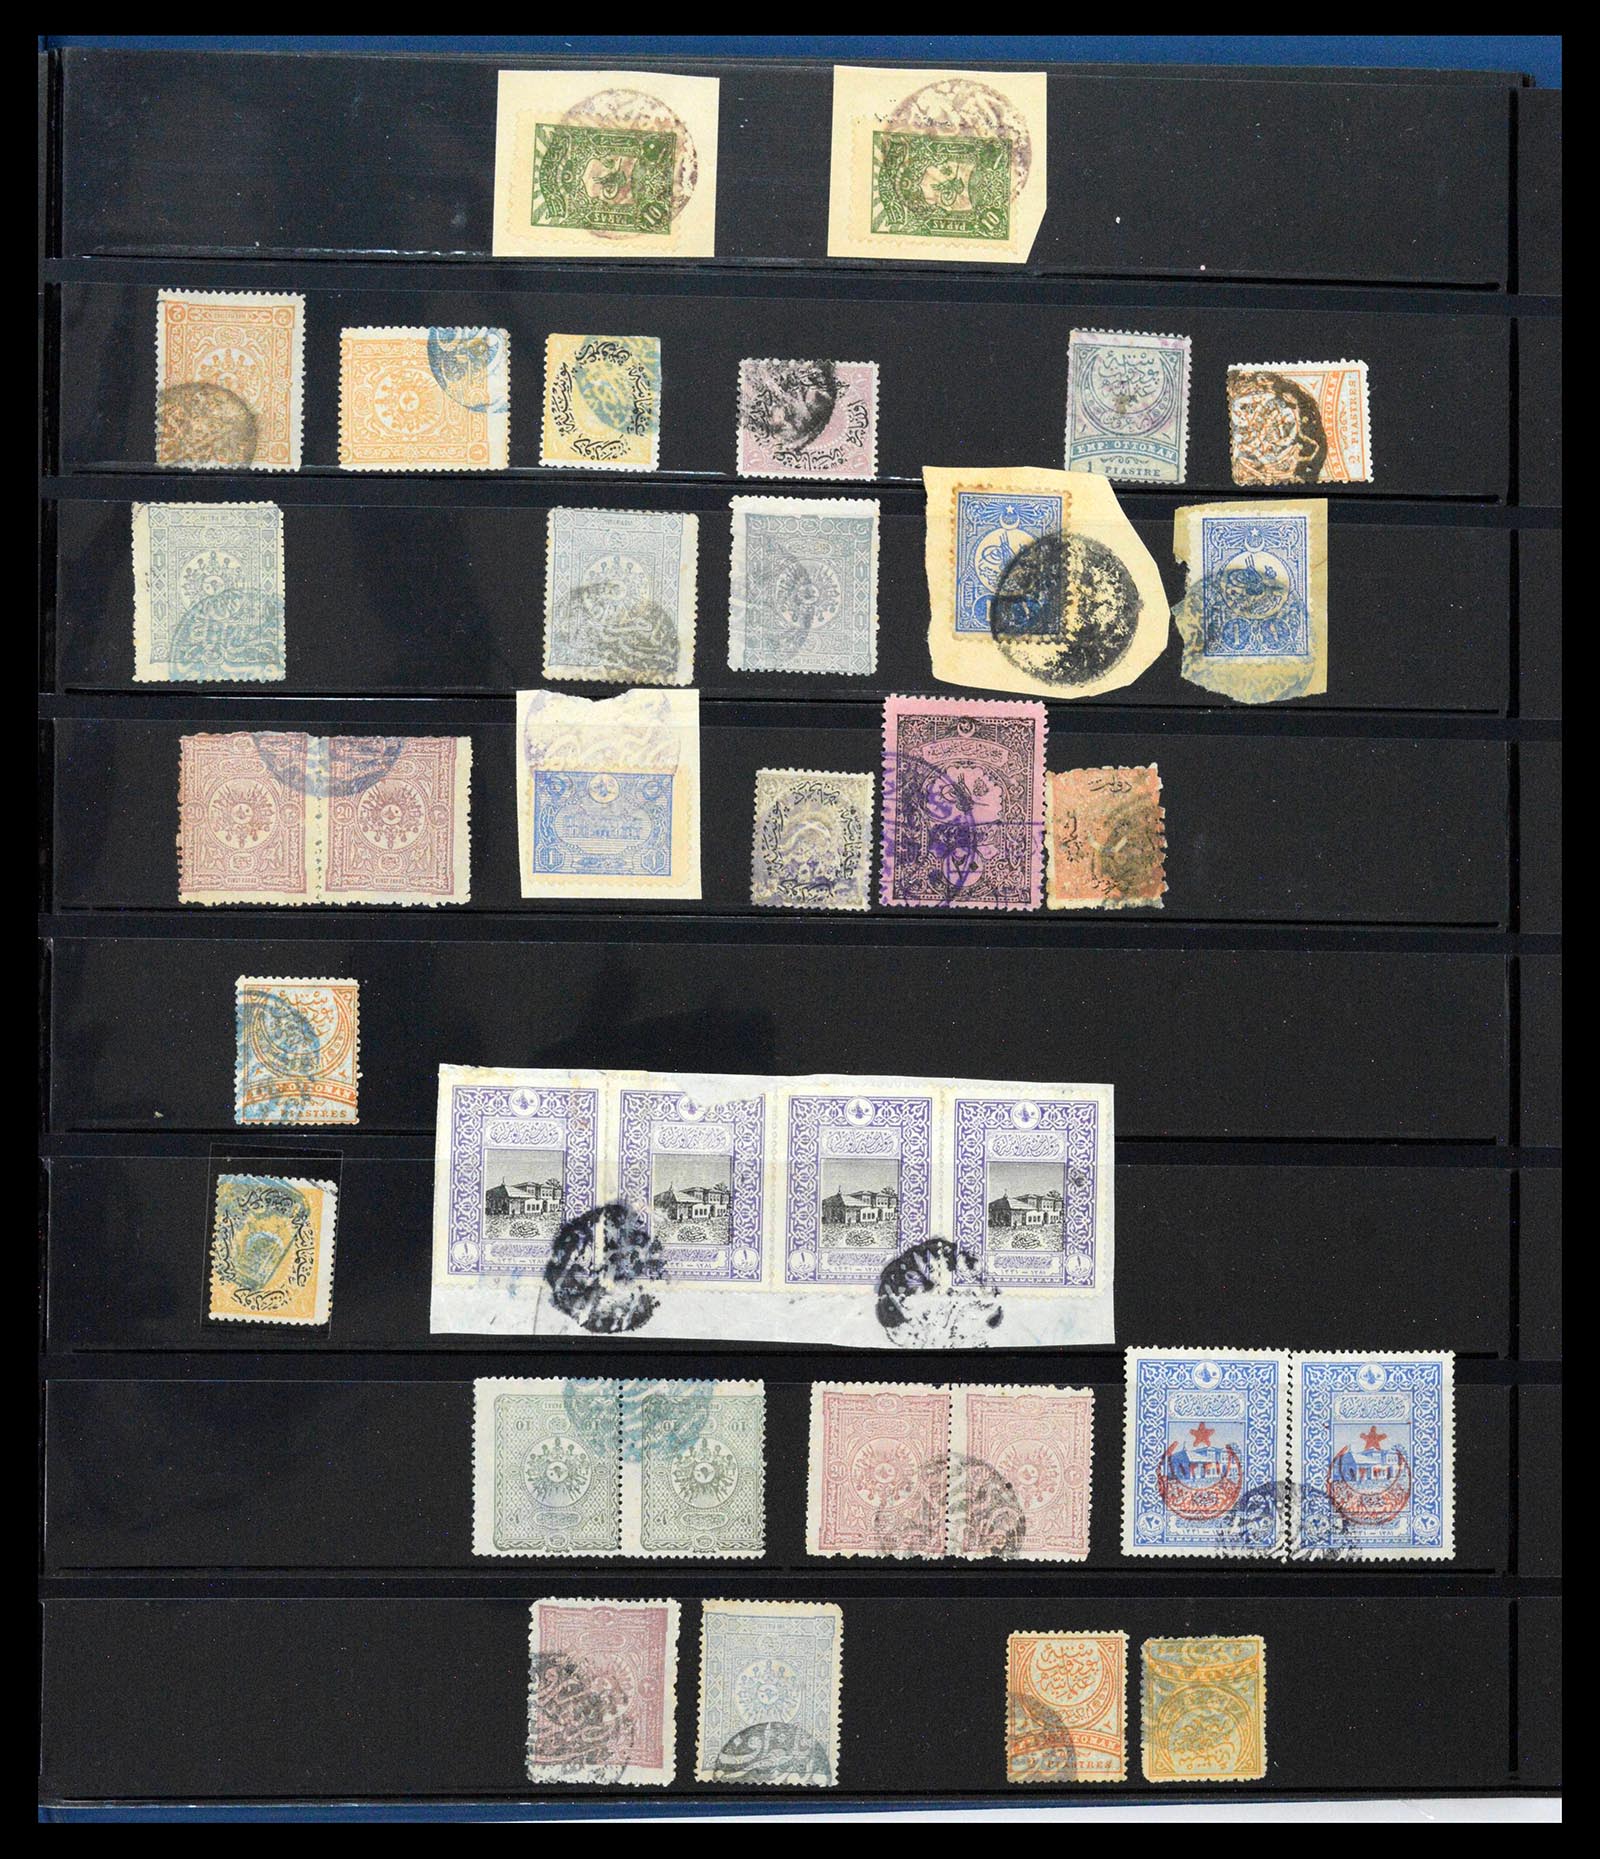 39345 0424 - Postzegelverzameling 39345 Turkije supercollectie stempels 1865-1930.